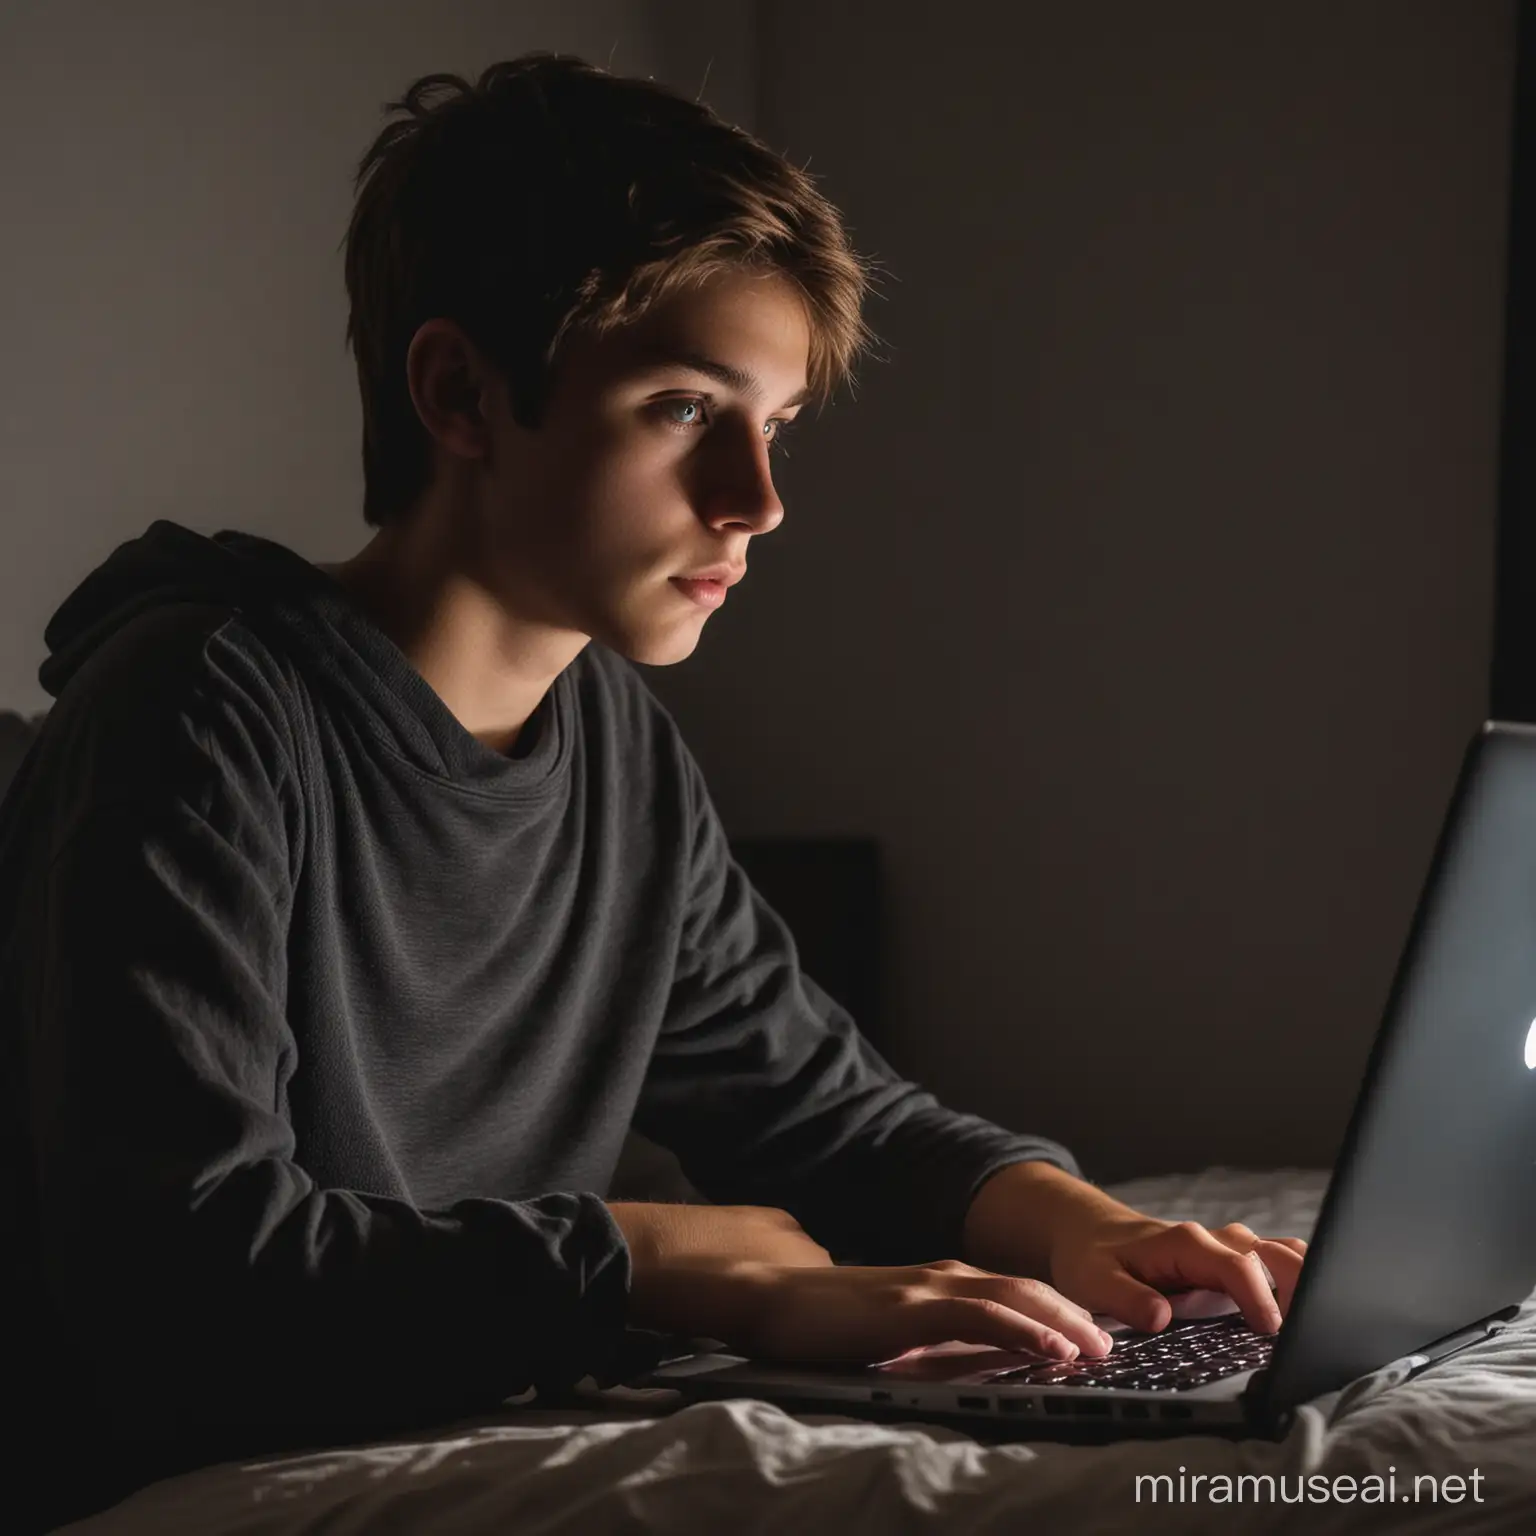 Focused Teenager Using Laptop in Dimly Lit Bedroom